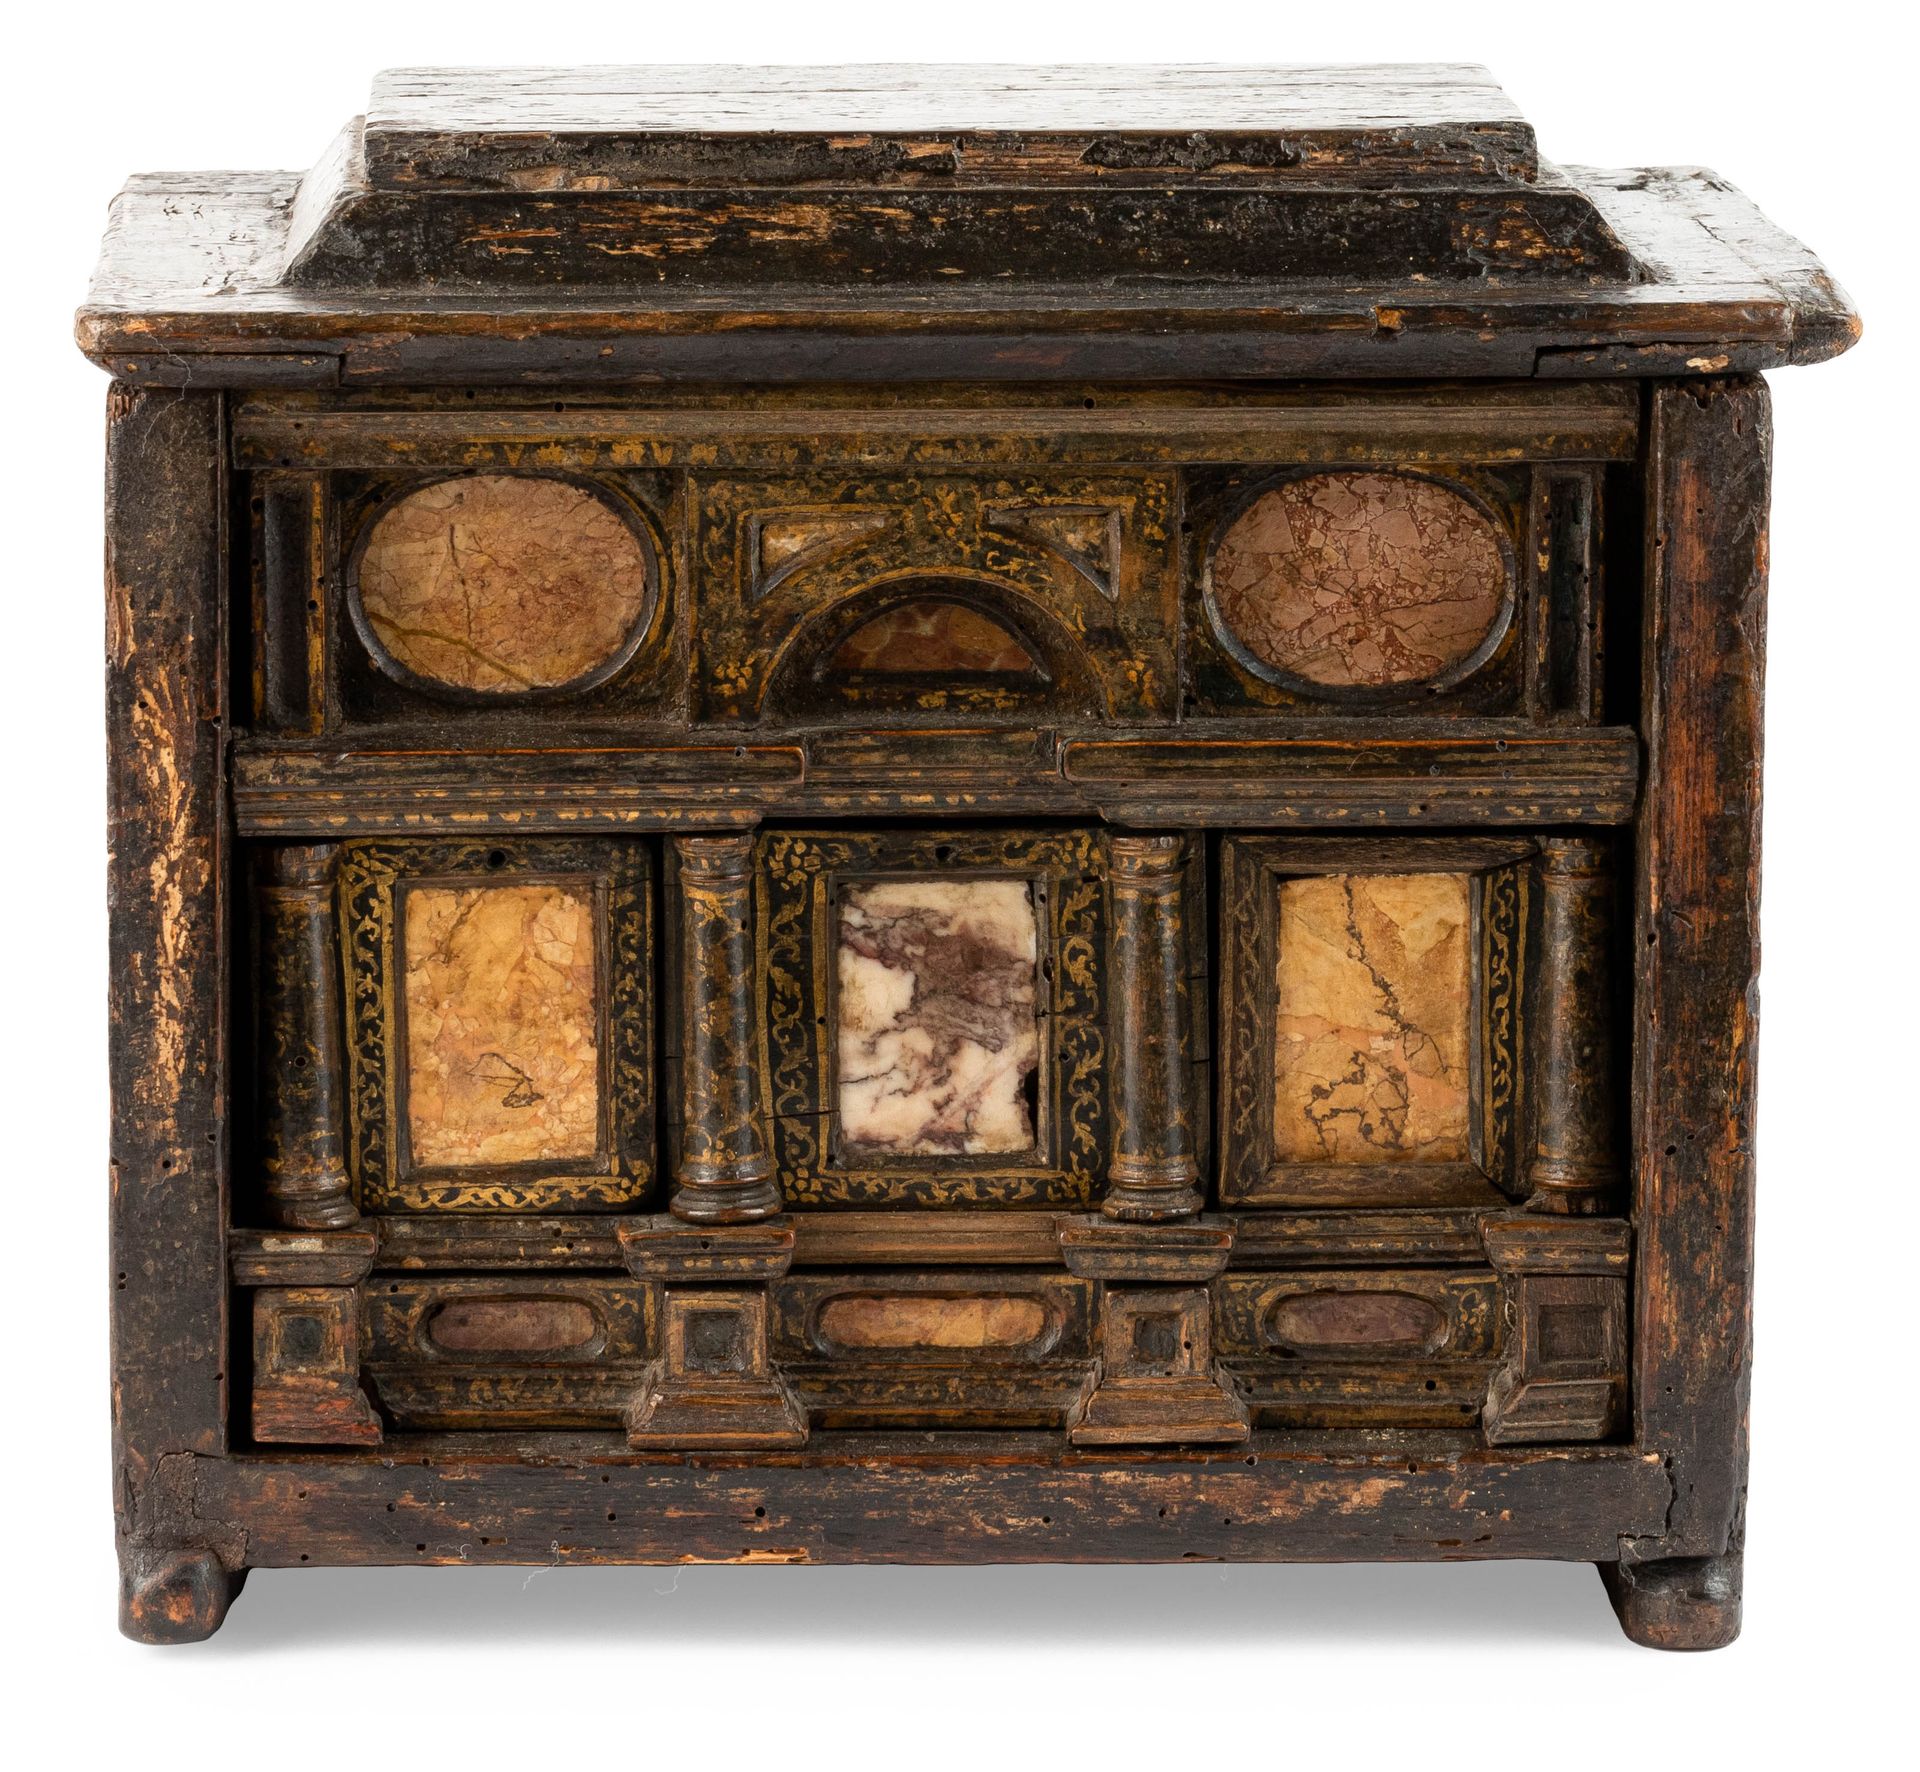 Cabinet à poser. Rome. Fin 16ème siècle. 表柜。罗马。16世纪晚期。

木头。绘画的痕迹。

敞开式踏板上装有四个抽屉，&hellip;